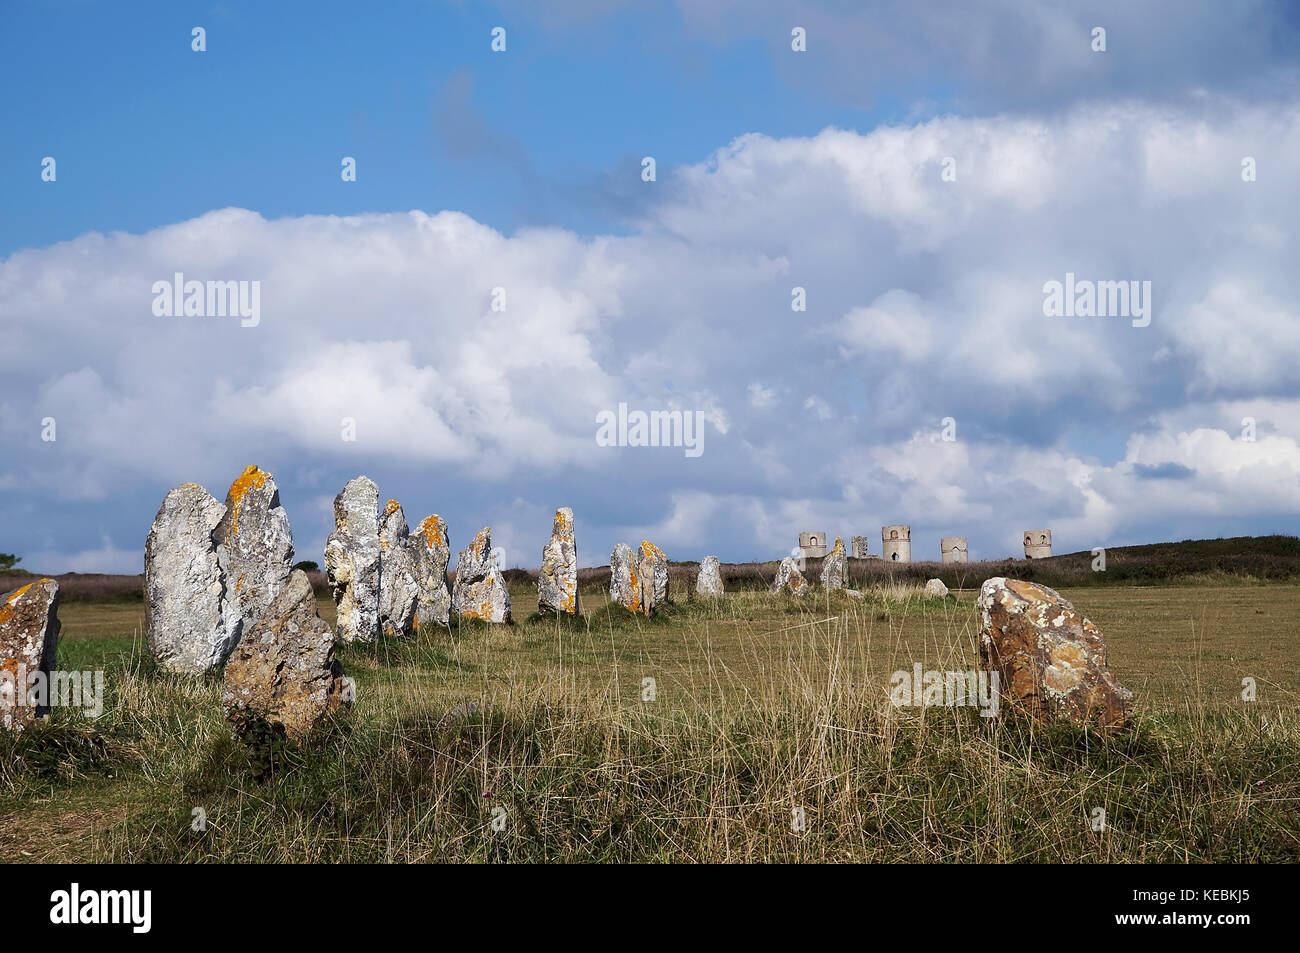 Ausrichtung von lagatjar Megalithen in Feld mit steinernen Turm im Hintergrund, in Camaret-sur-Mer (Frankreich - Bretagne). Stockfoto